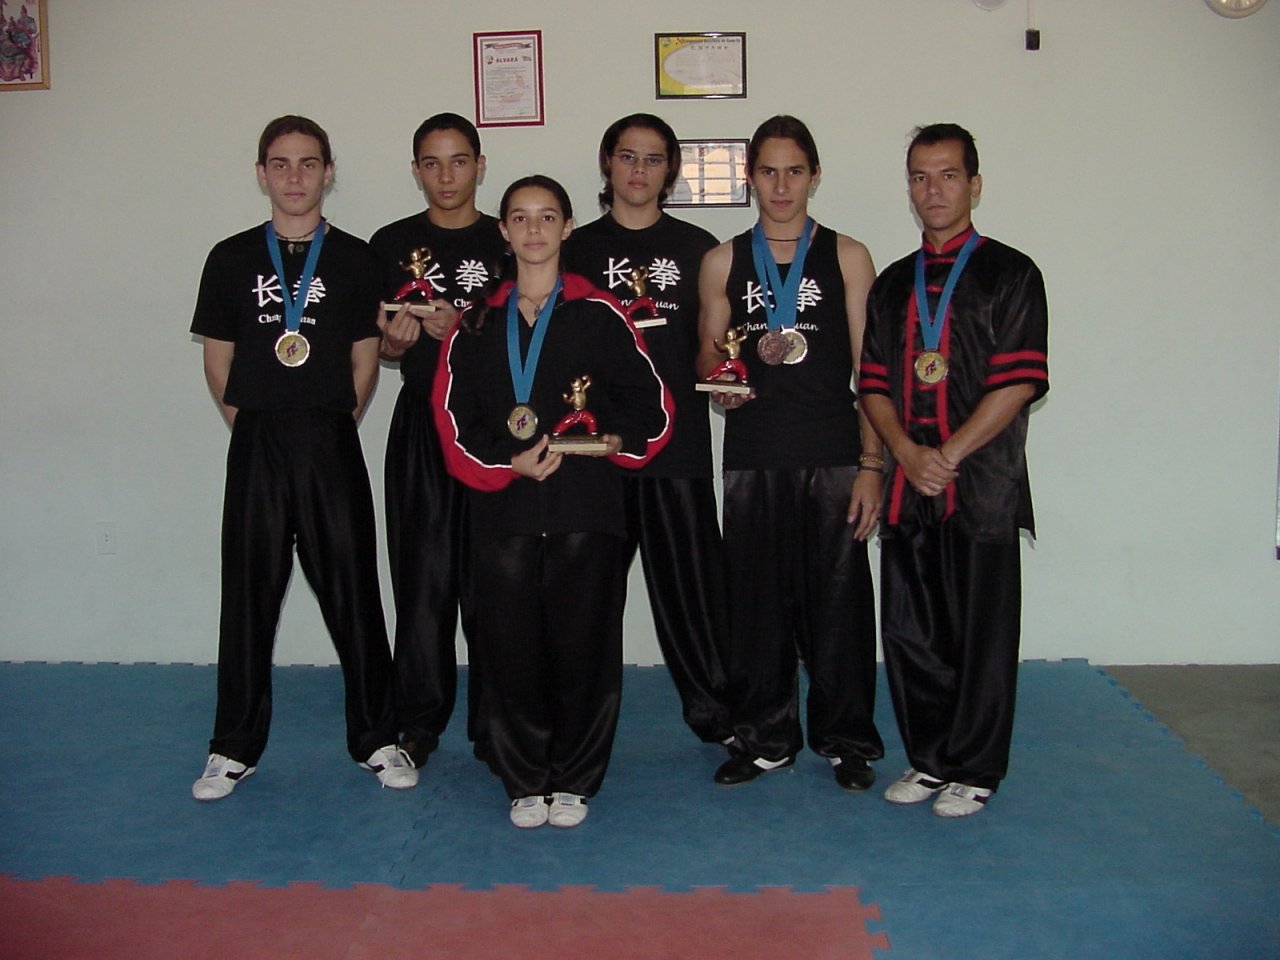 Professor Andr e atletas se destacaram na modalidade em 2003